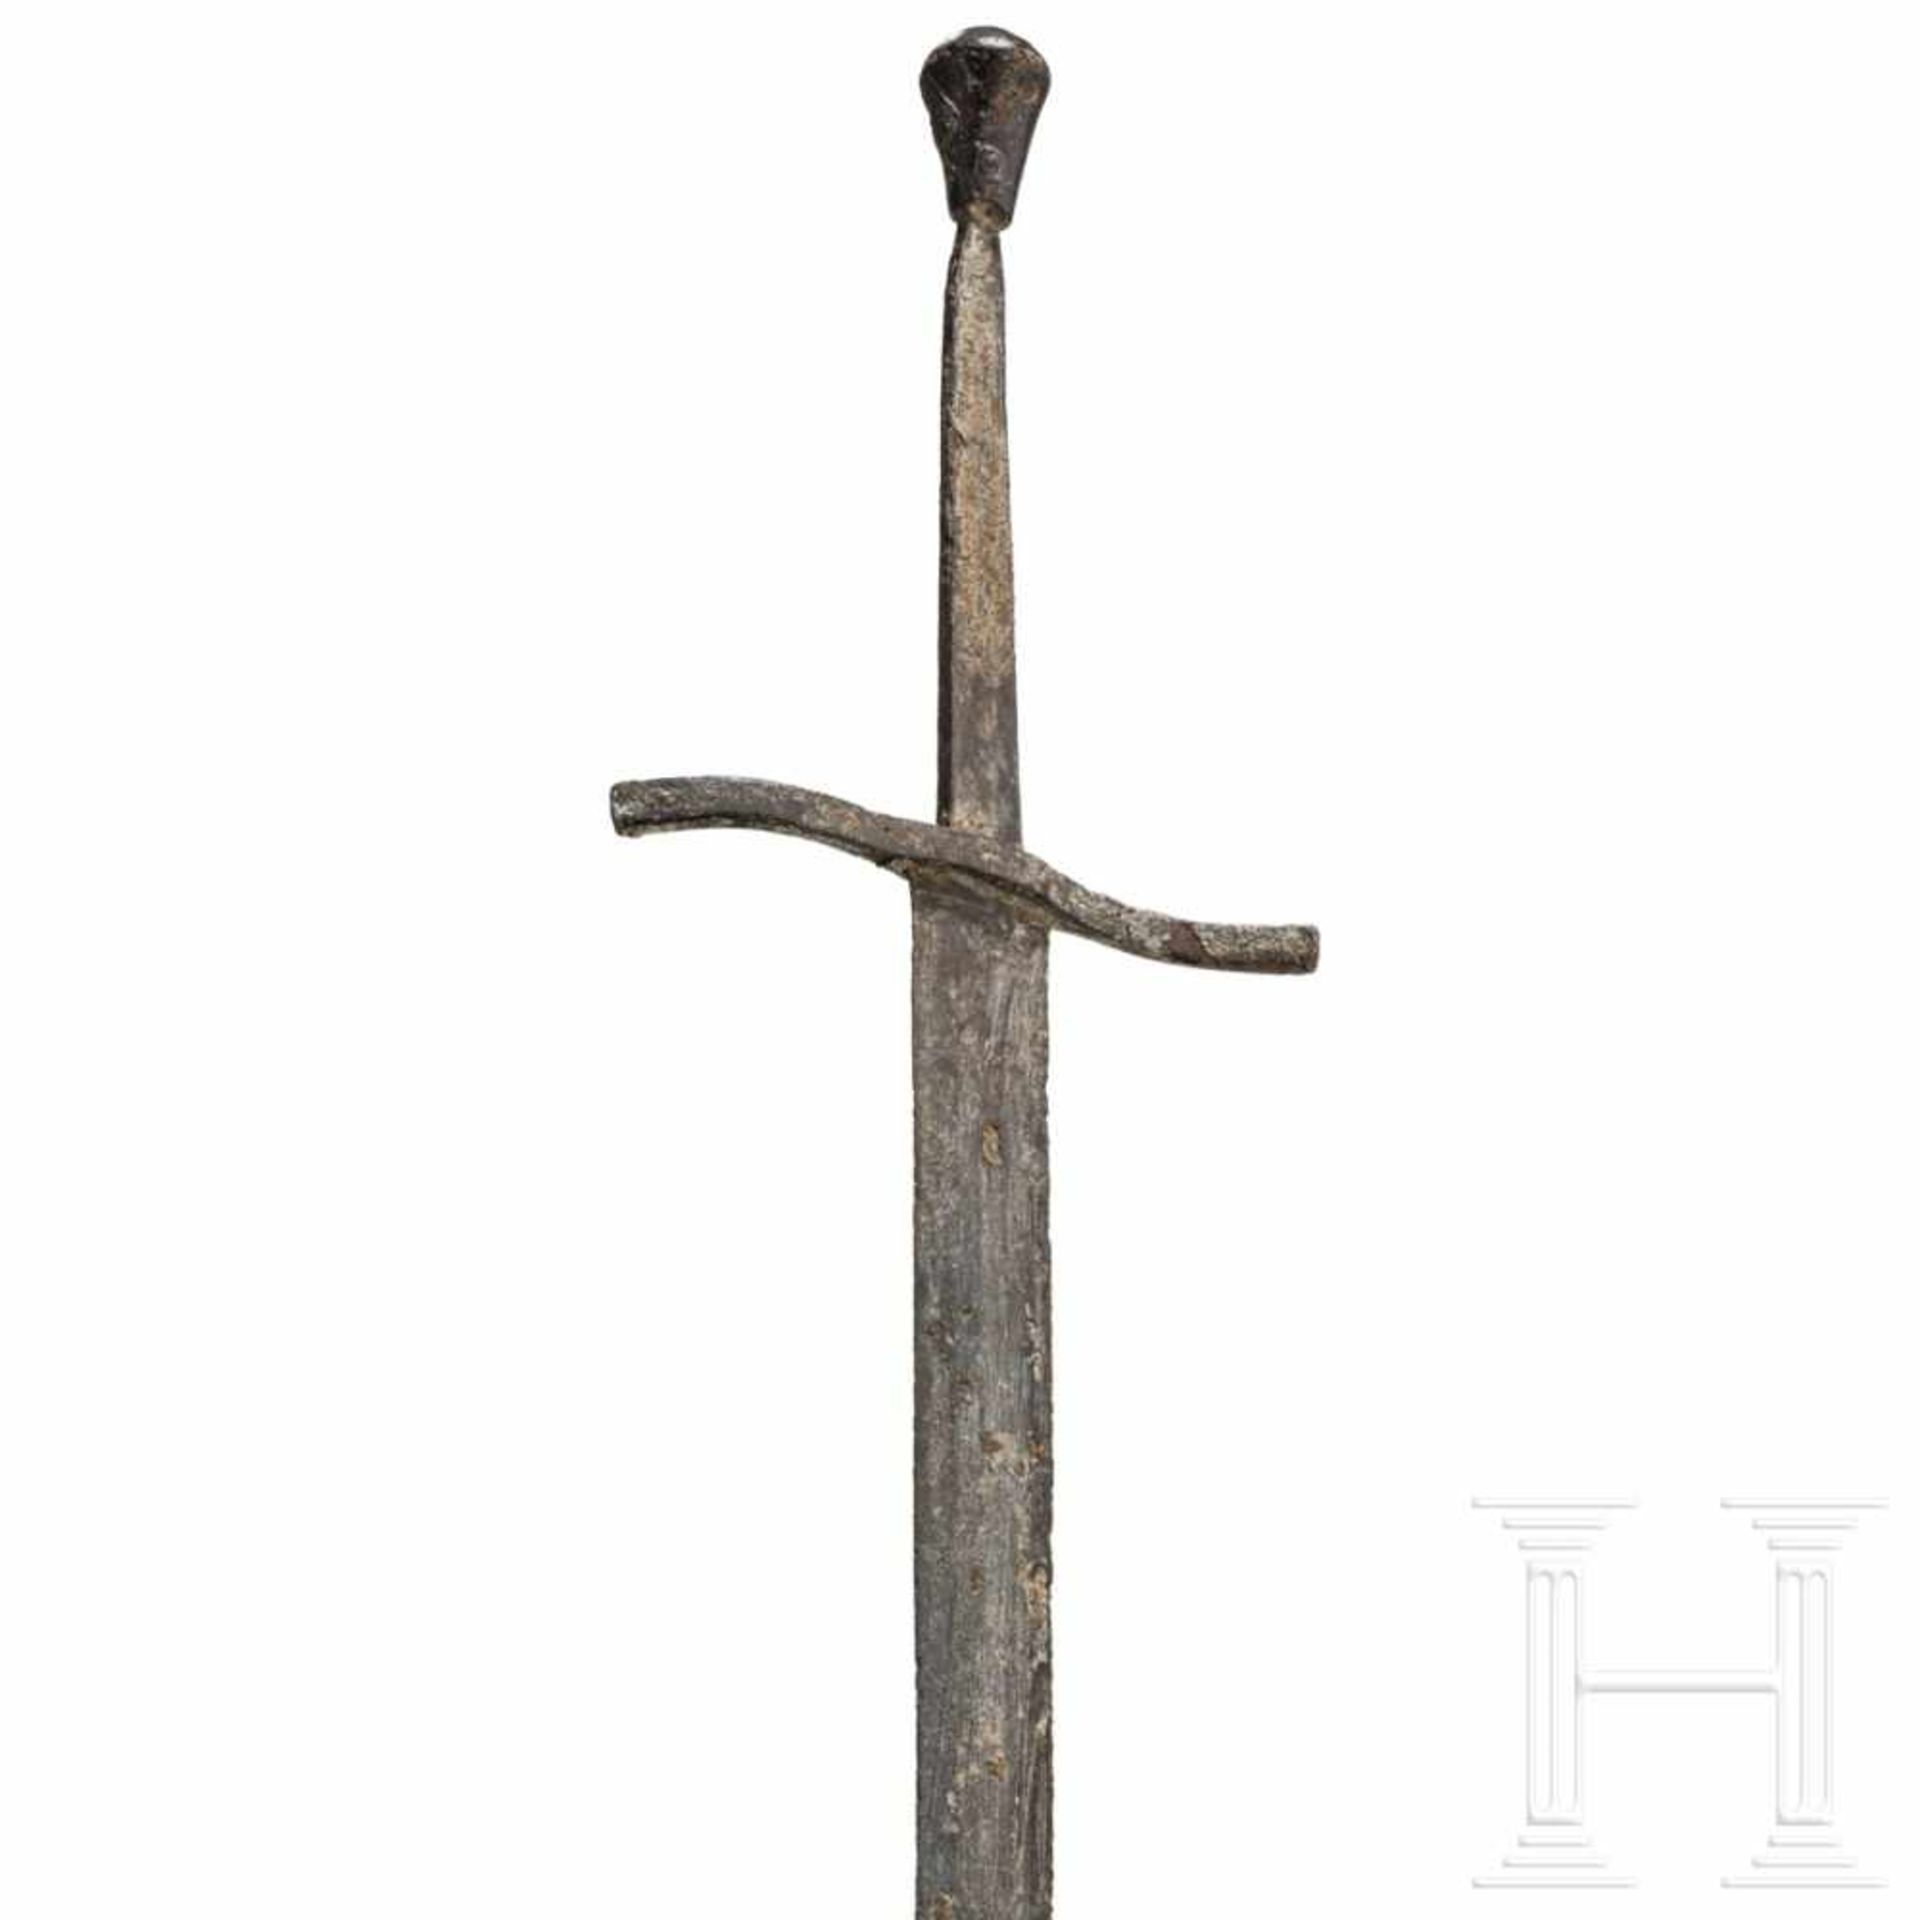 A German or Polish knightly sword, circa 1460Kräftige zweischneidige Klinge mit abgeflachtem - Bild 3 aus 5